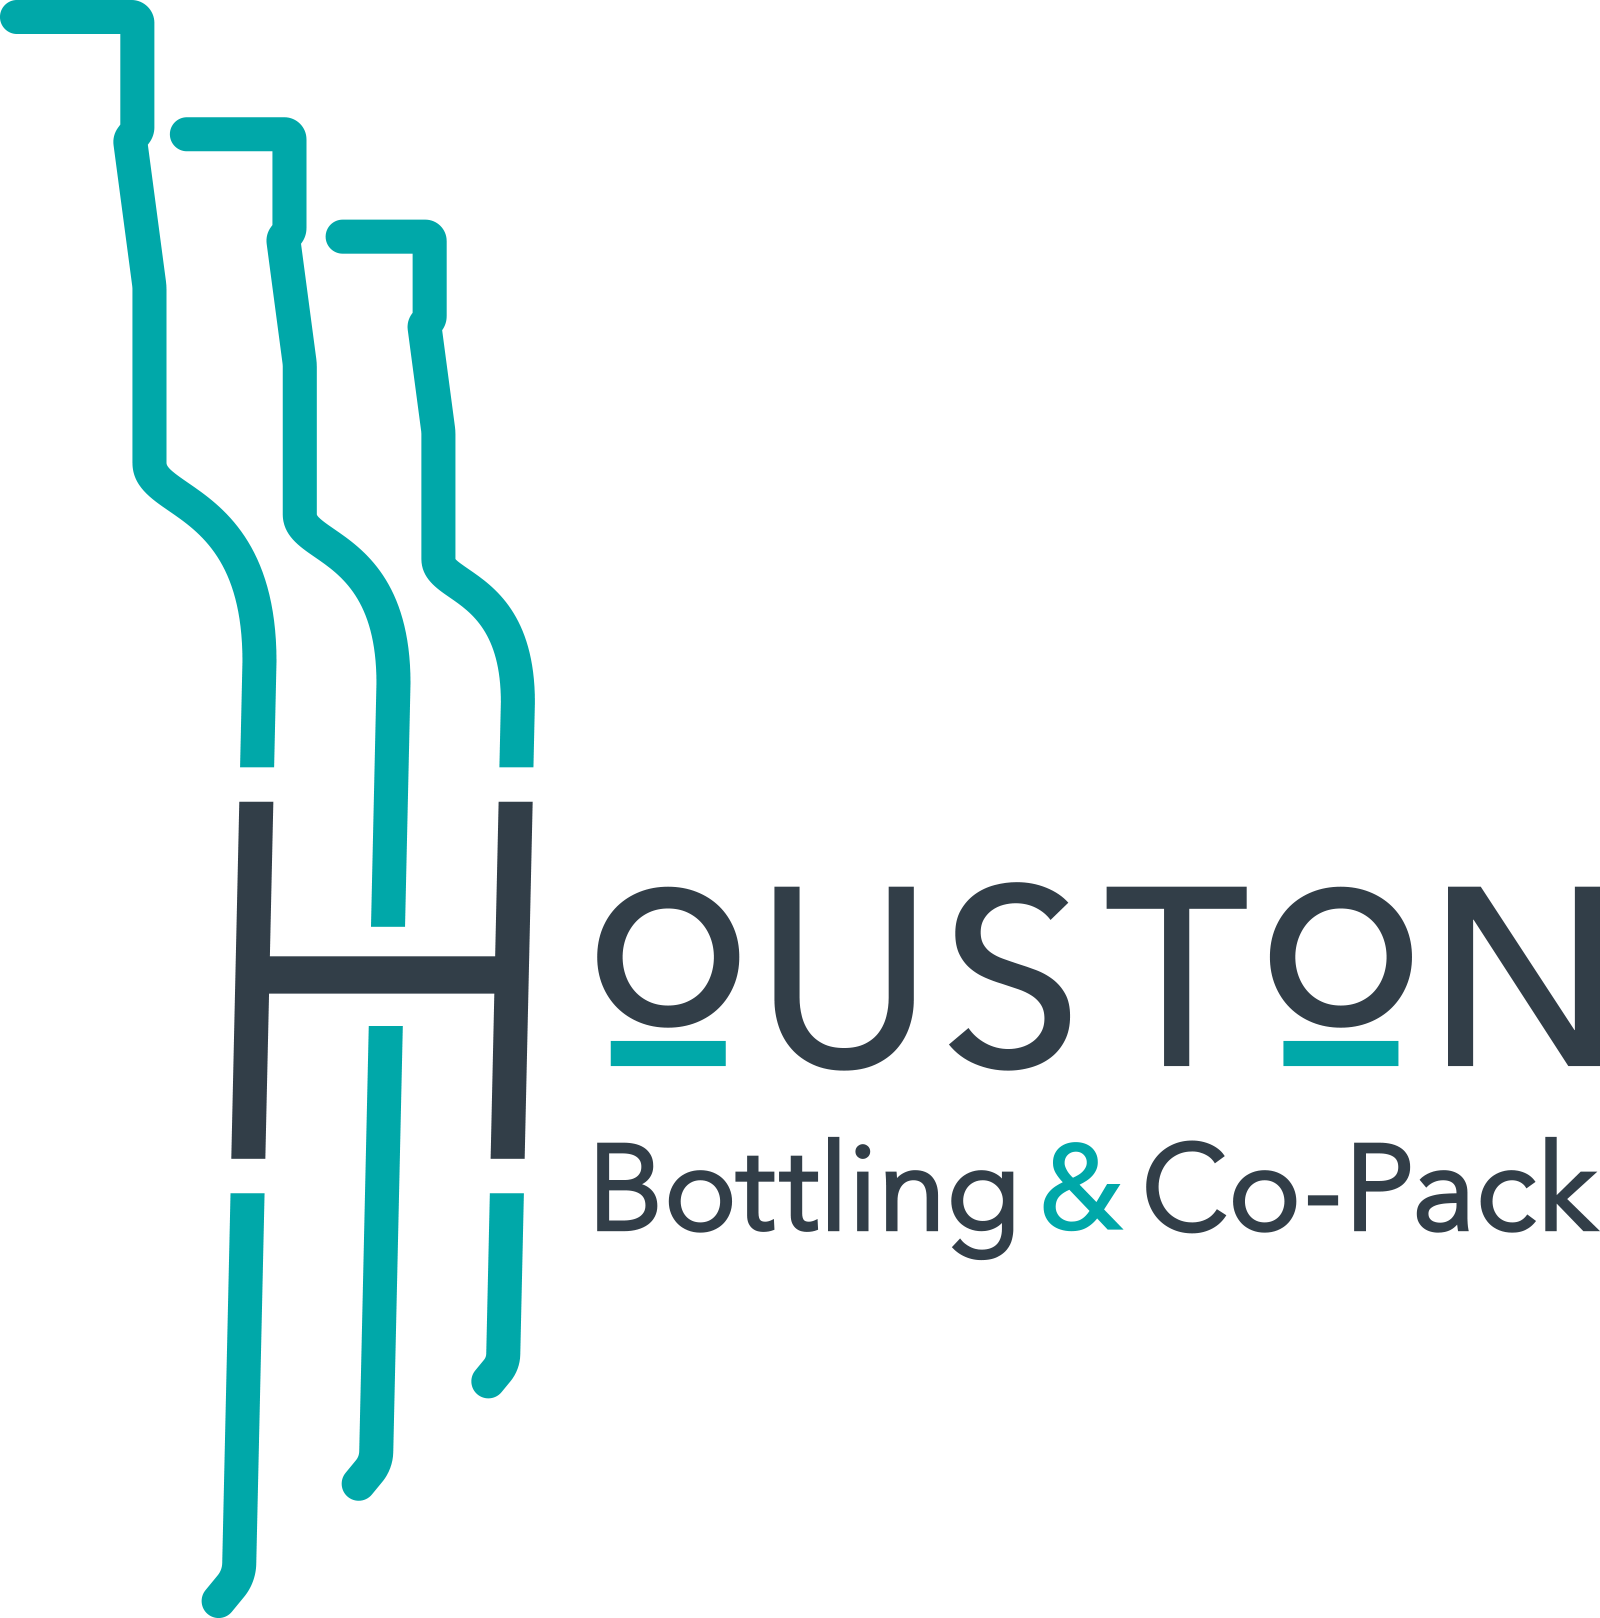 Houston Bottling & Co-Pack